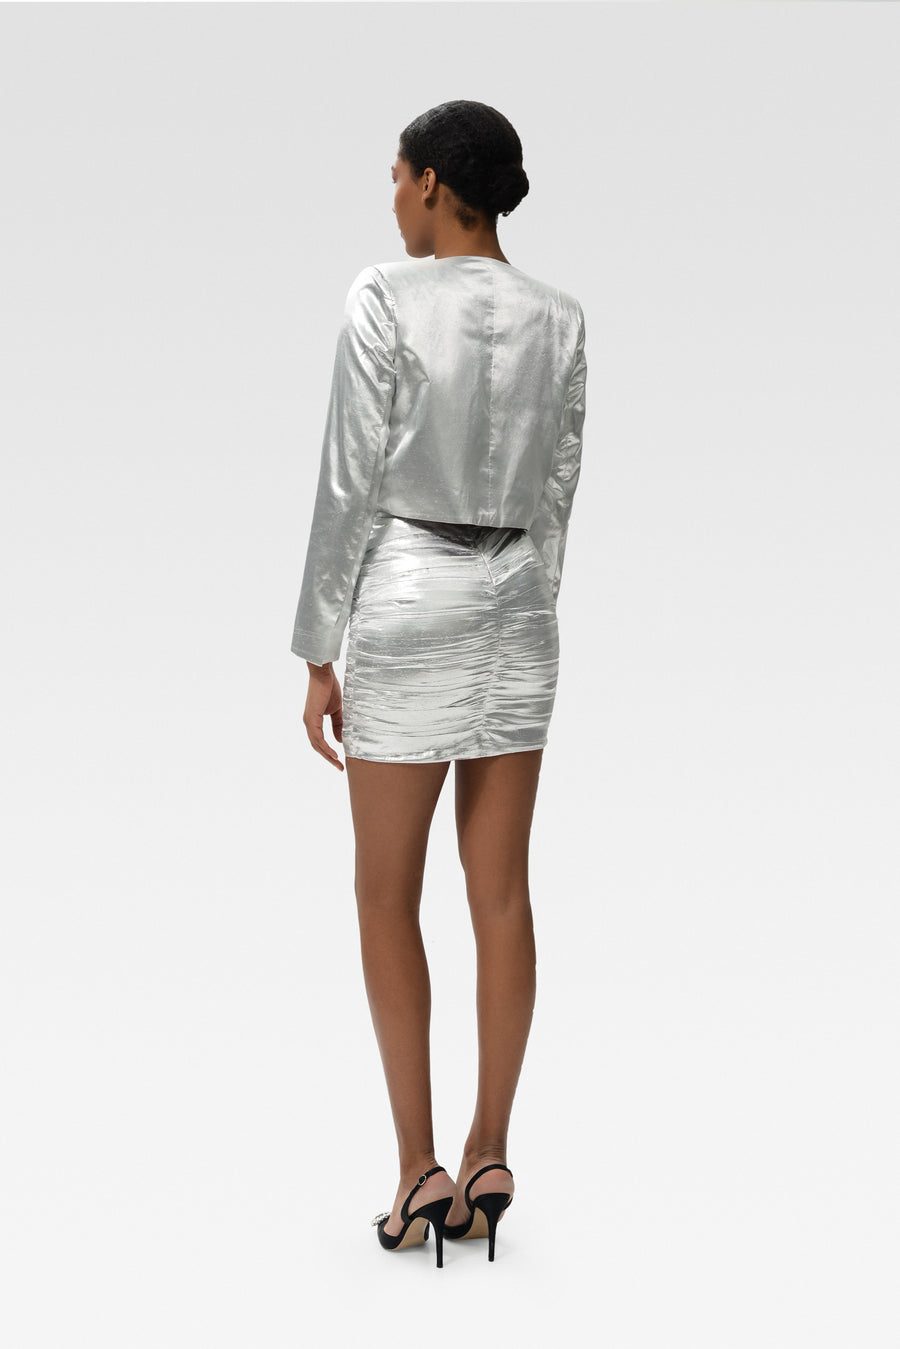 Shiny Silver Skirt&Jacket Combination